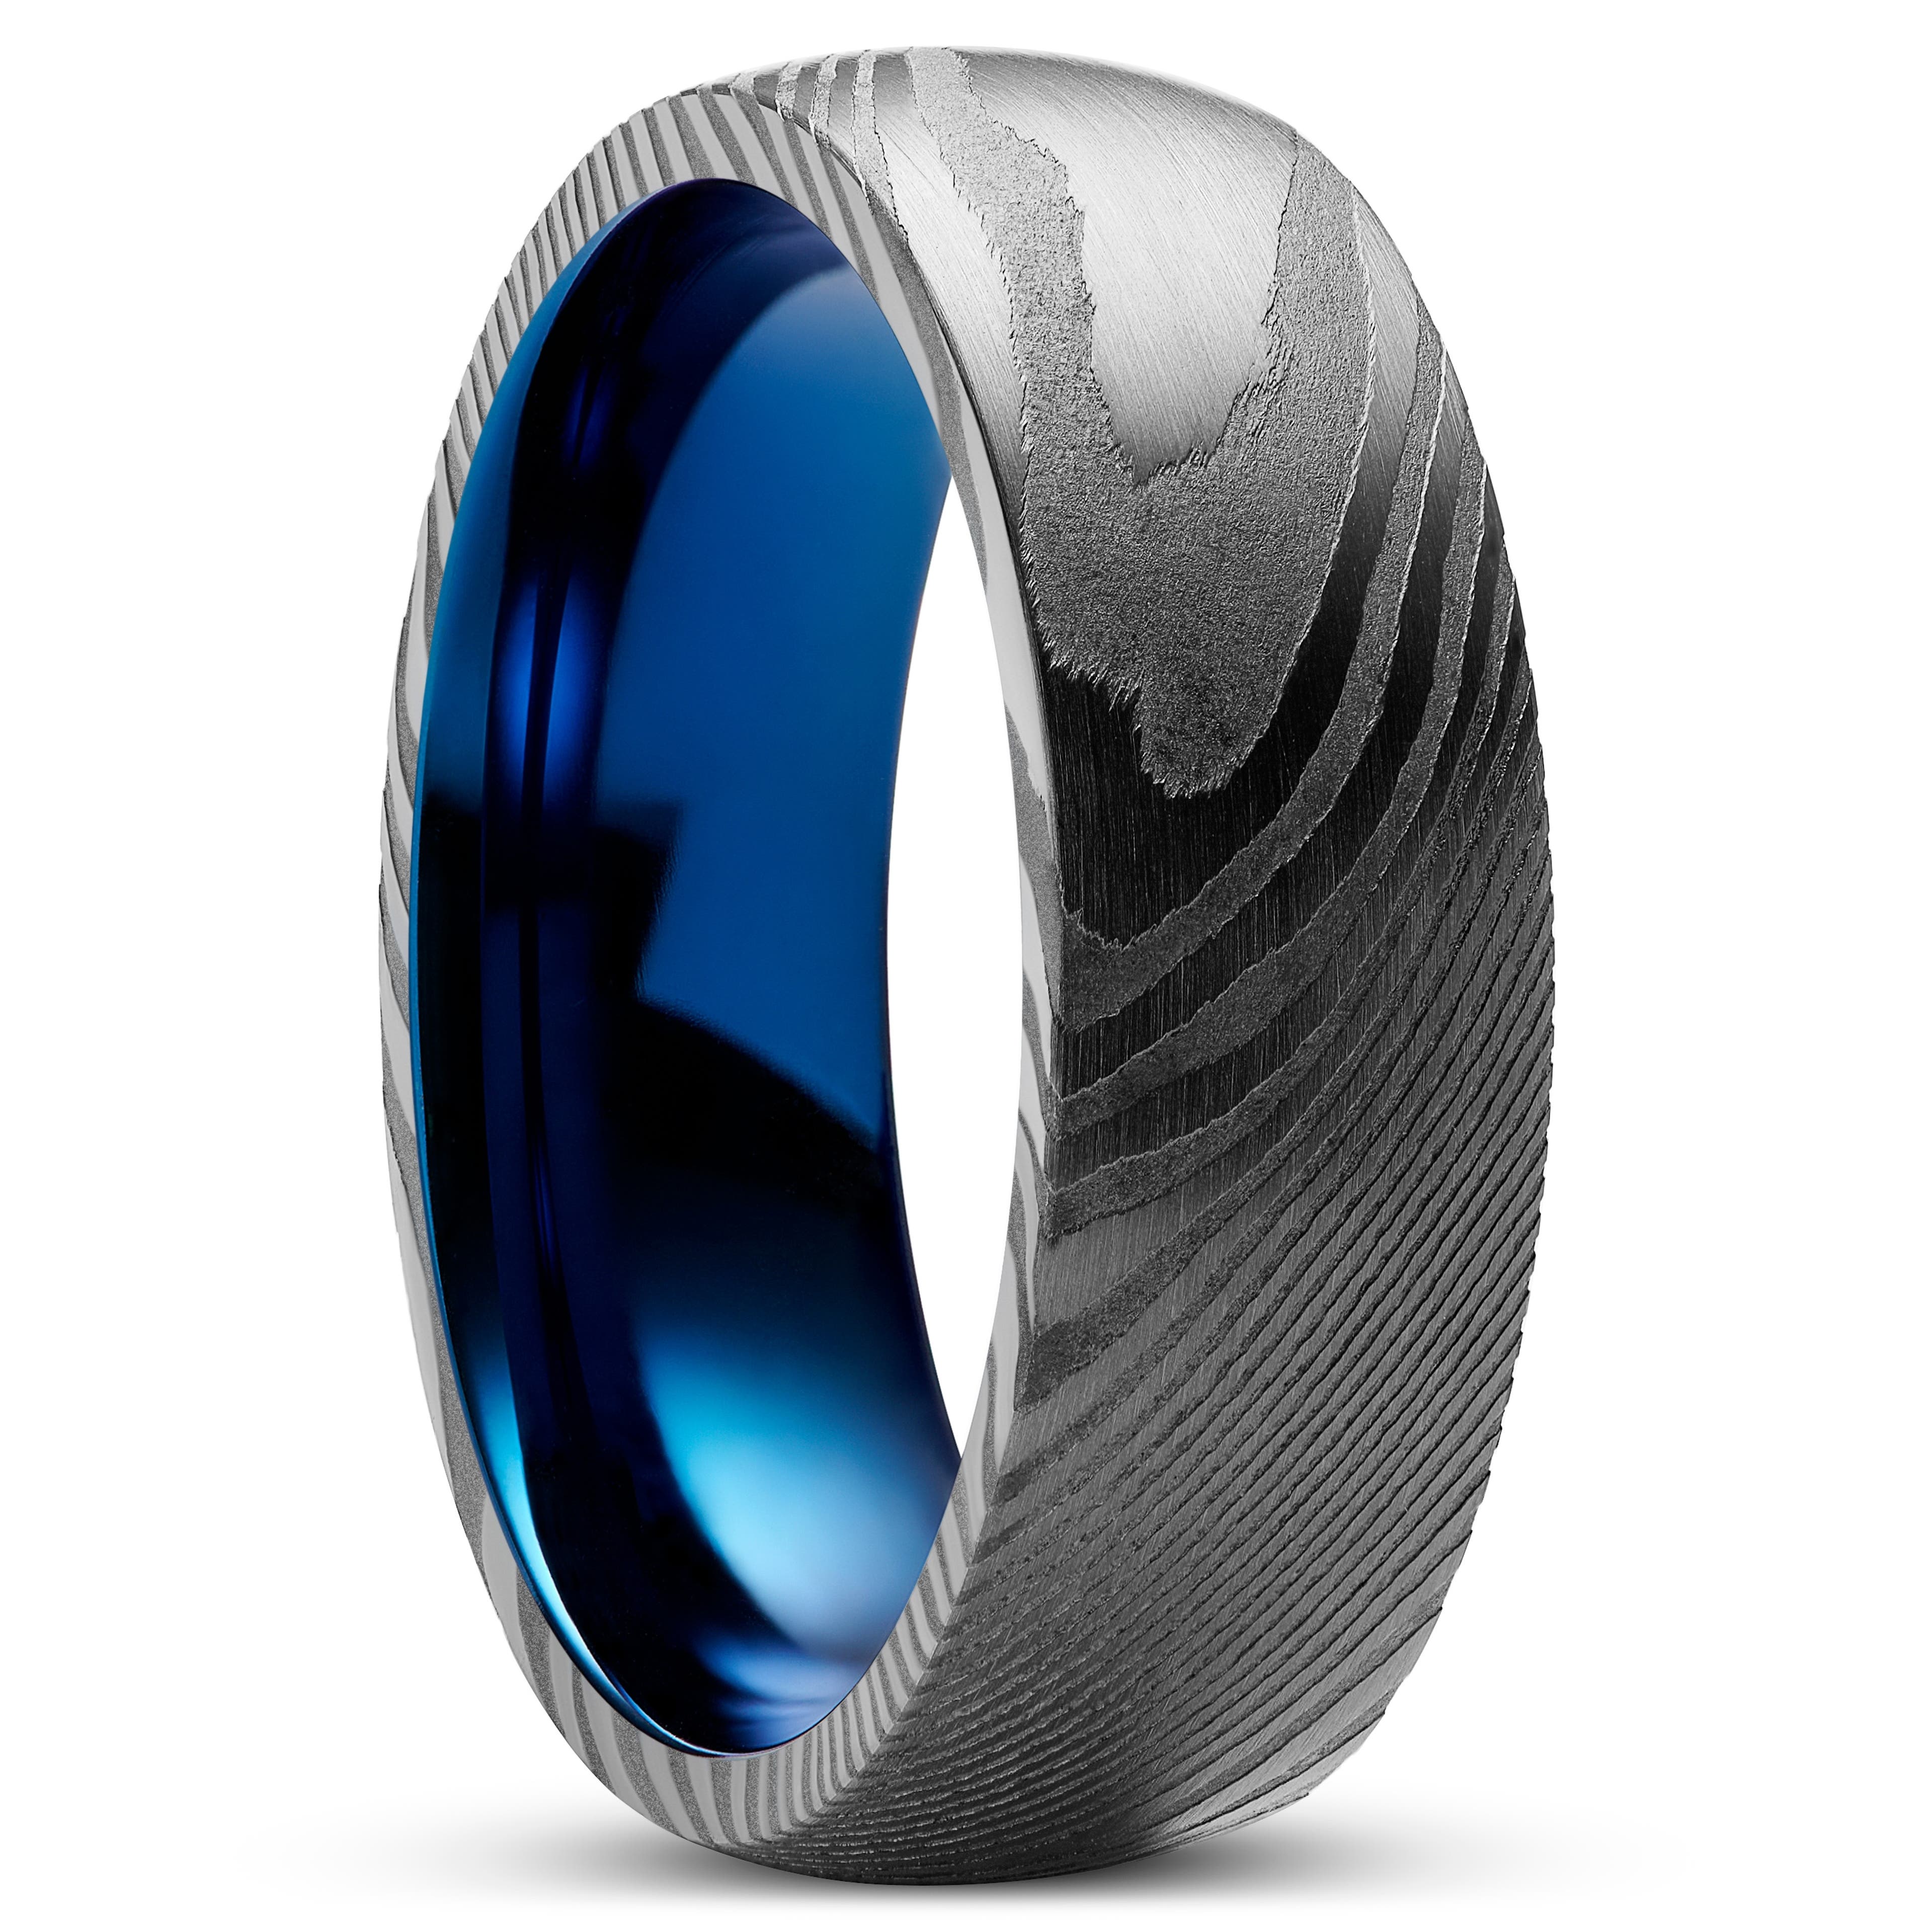 Fortis | 7 mm Gunmetal Damascus Stål og Blå Titanium Ring